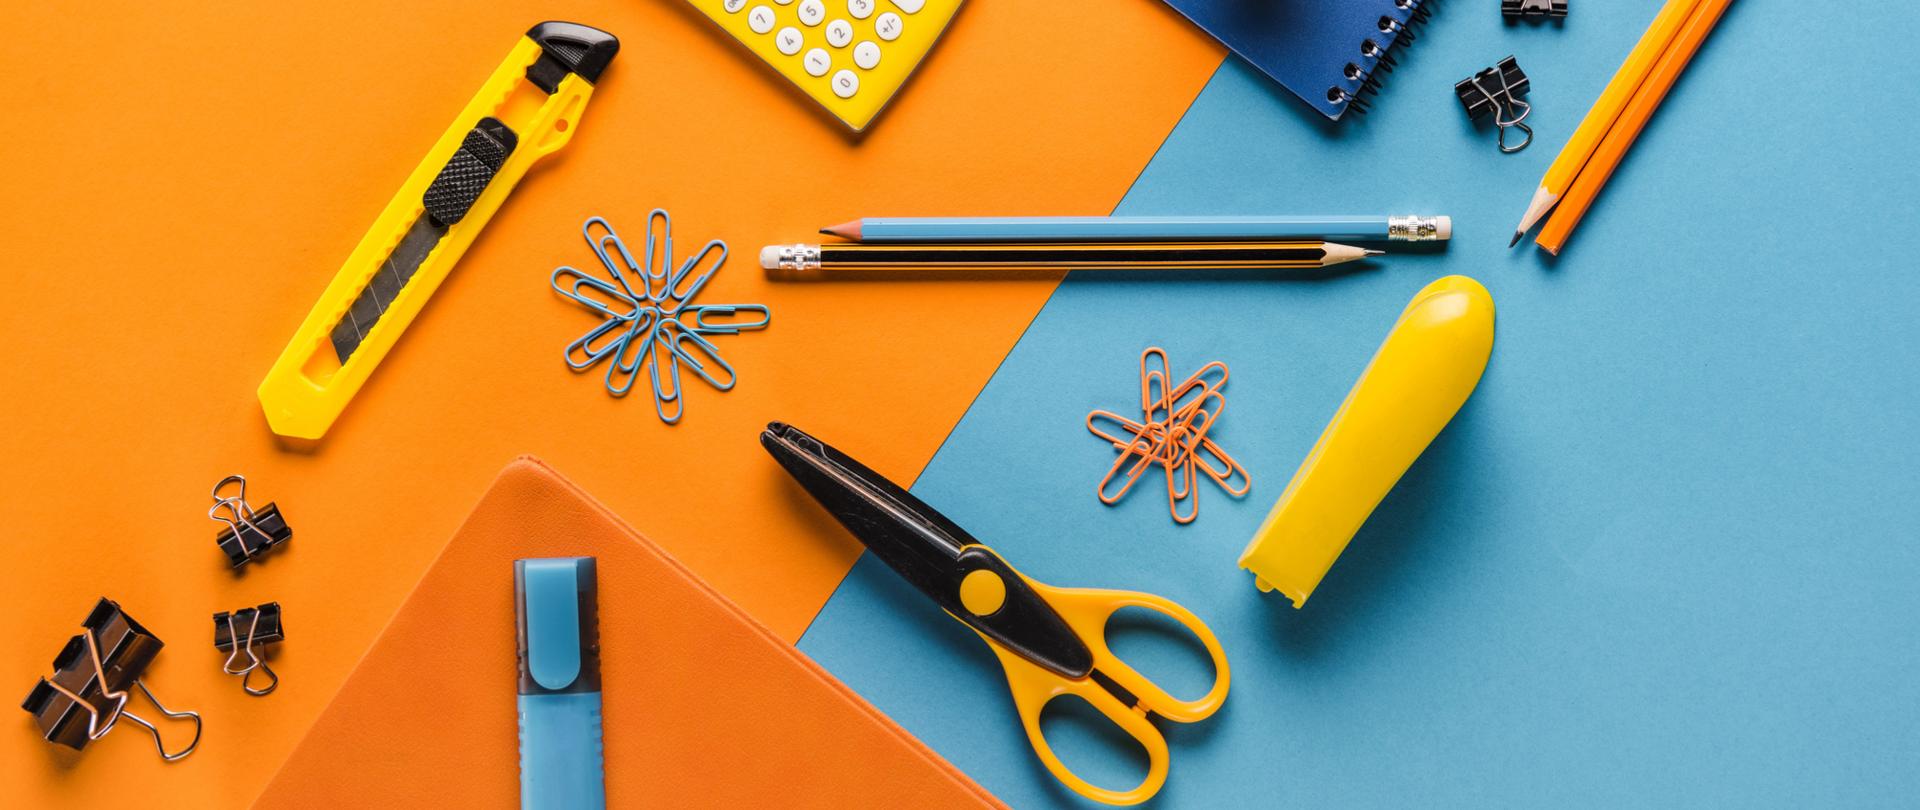 Na zdjęciu są przybory szkolne, np. ołówki, kalkulator, nożyczki itd. Tło jest pomarańczowo niebieskie.